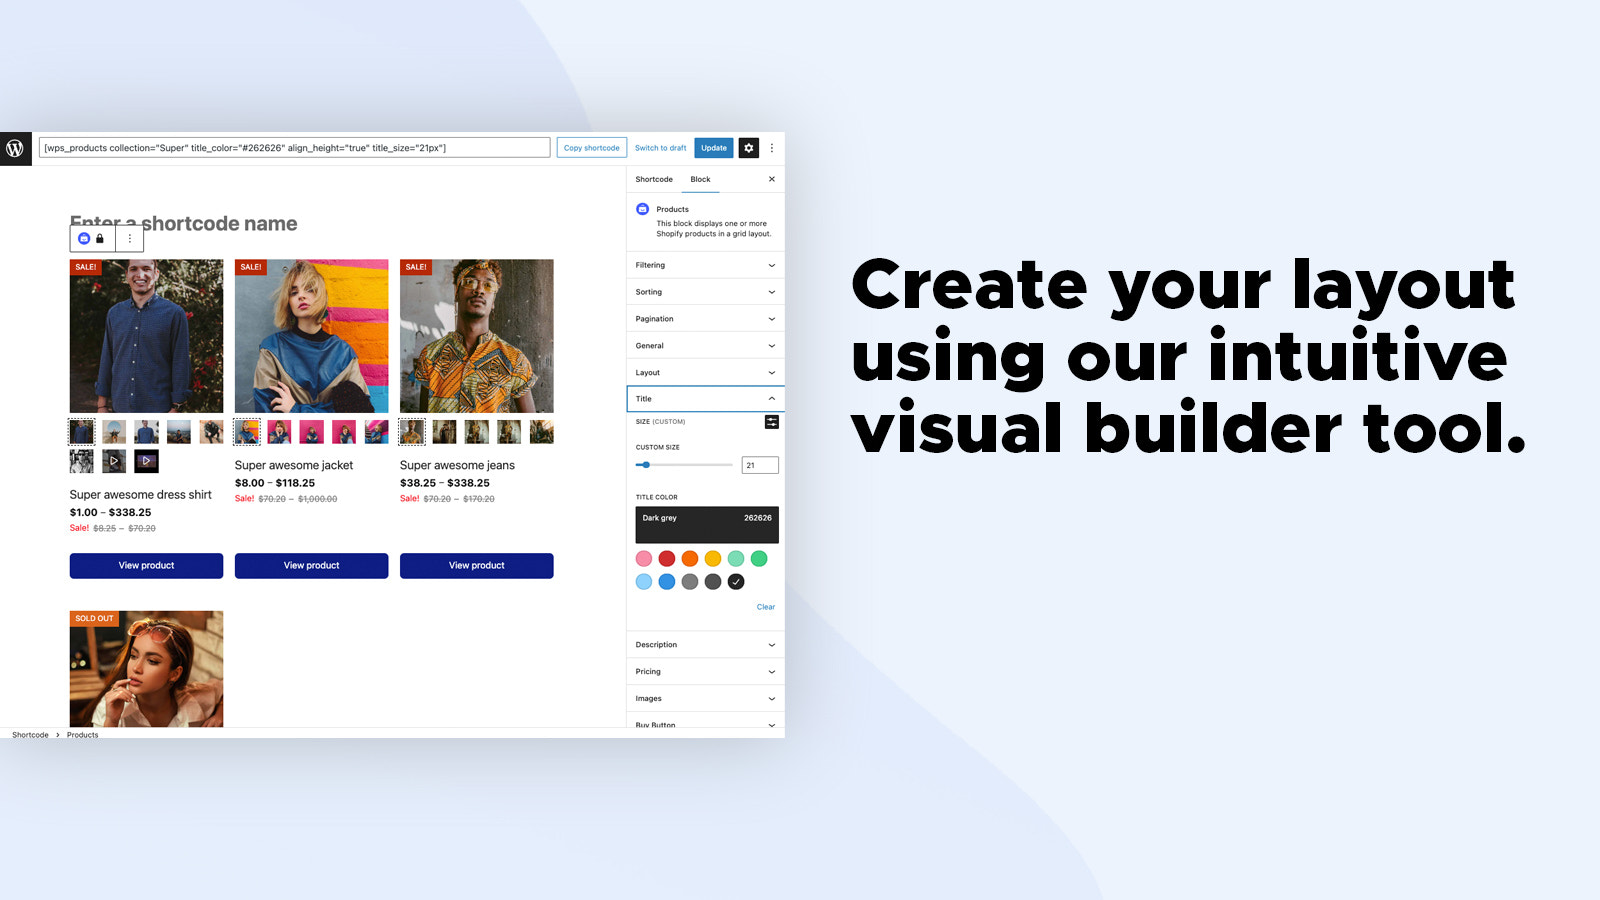 Opret dit layout ved hjælp af vores intuitive visuelle byggeværktøj.